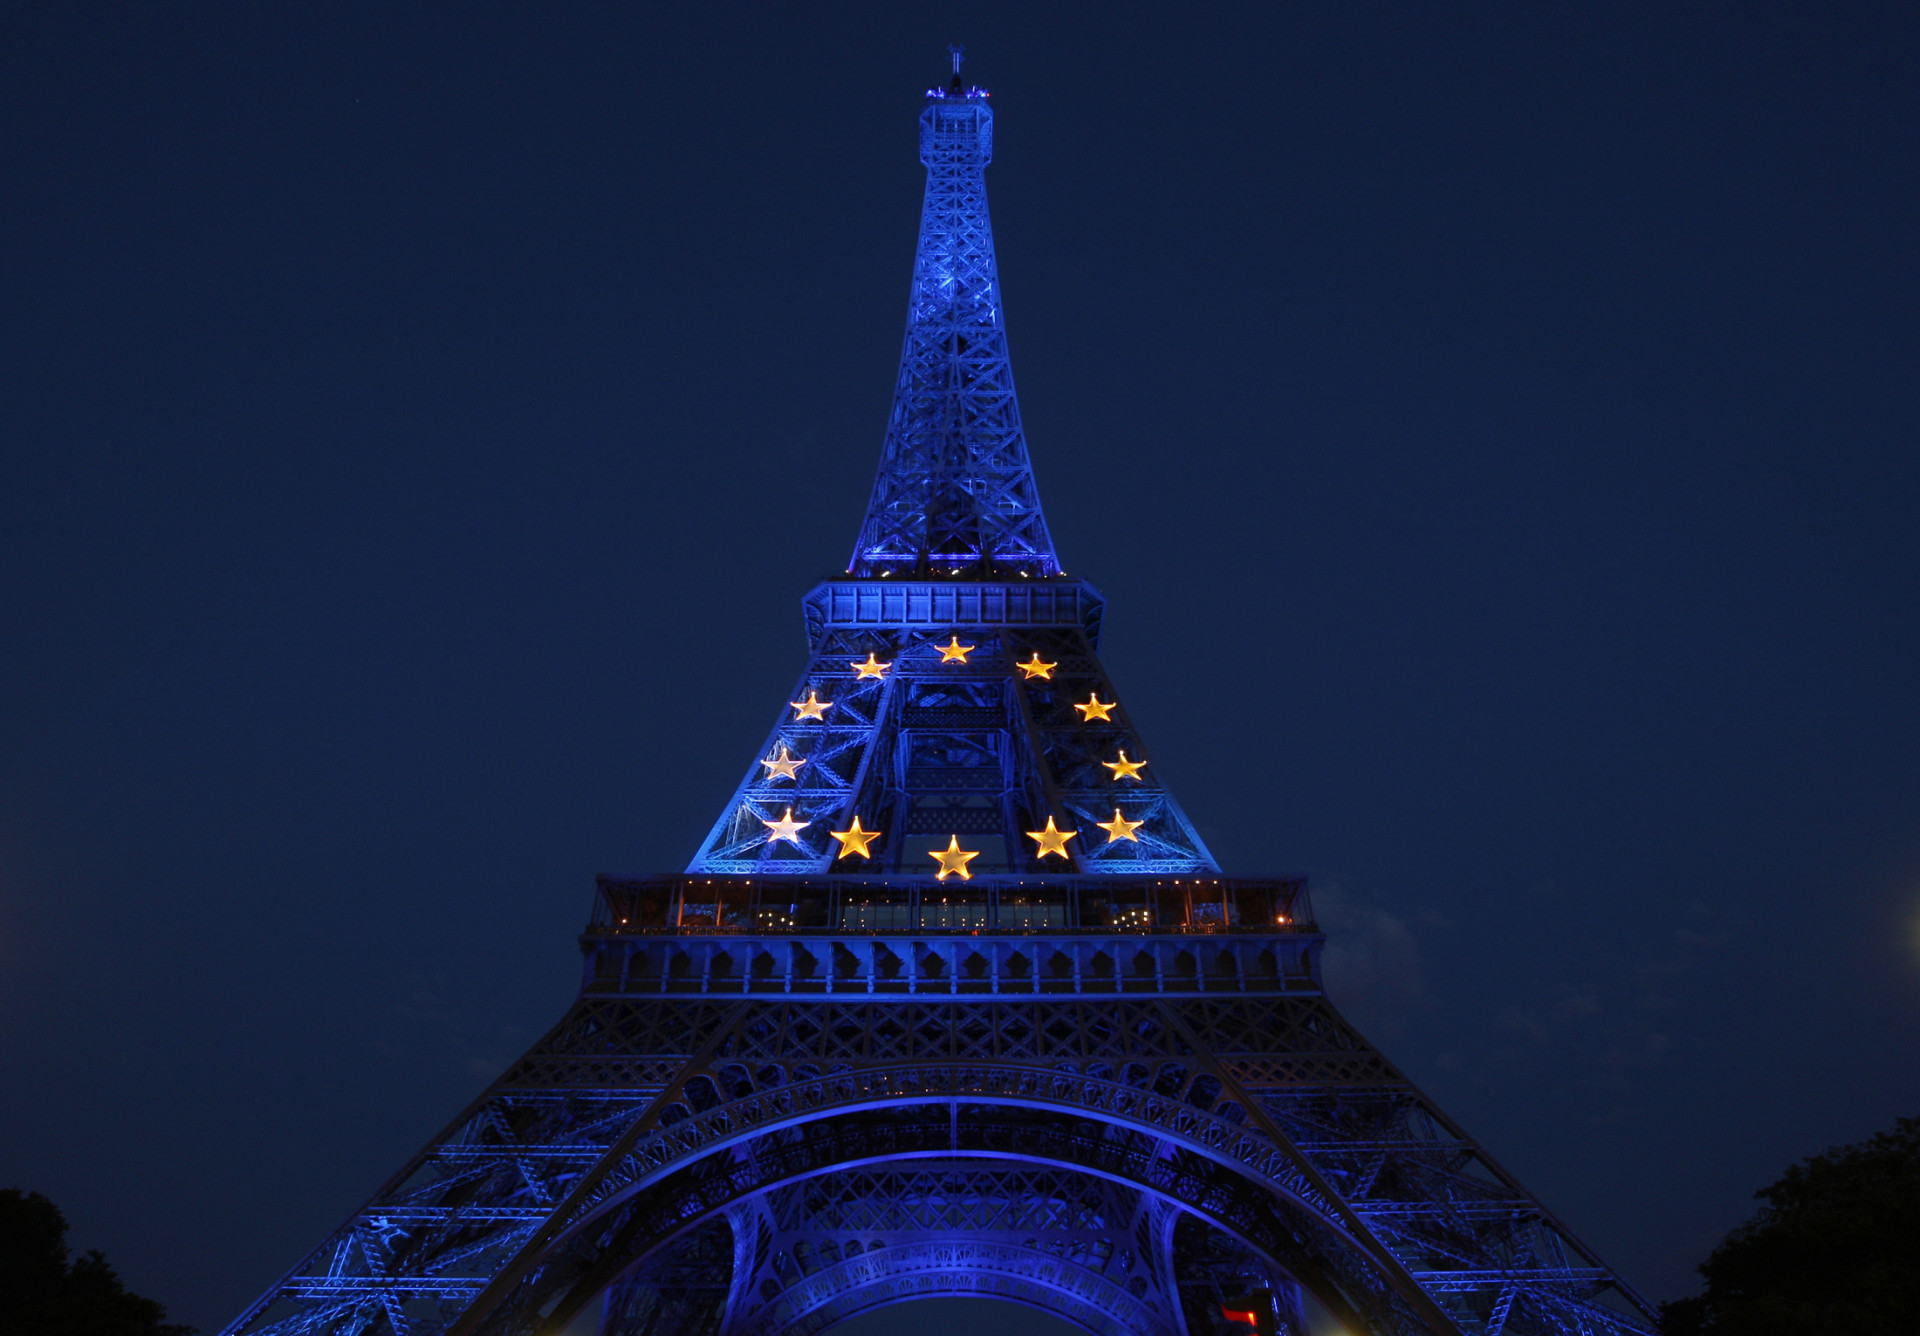 Pour inaugurer l'année de la présidence de l'Union Européenne assurée par la France, la Tour Eiffel avait été éclairée aux couleurs du drapeau européen.<p><a href="https://www.msn.com/fr-fr/community/channel/vid-7xx8mnucu55yw63we9va2gwr7uihbxwc68fxqp25x6tg4ftibpra?cvid=94631541bc0f4f89bfd59158d696ad7e">Suivez-nous et accédez tous les jours à du contenu exclusif</a></p>